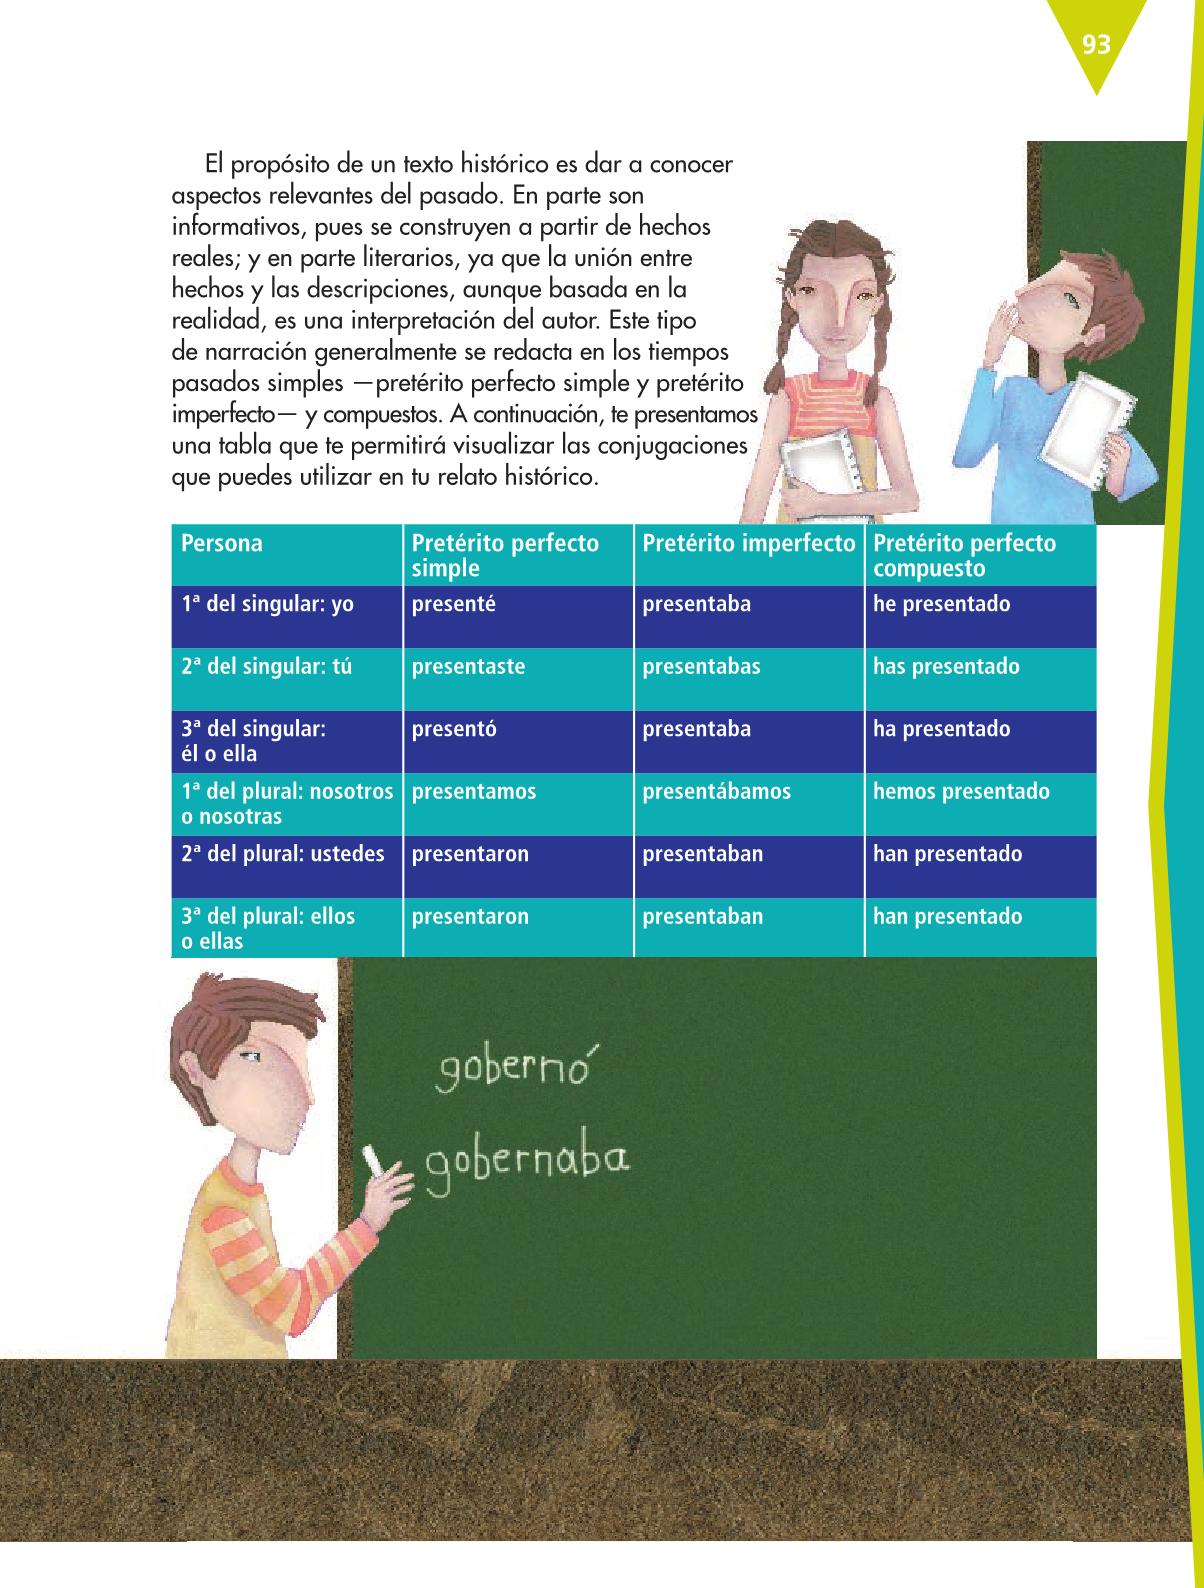 Español Sexto grado 2016-2017 - Online - Página 59 de 184 - Libros de Texto Online